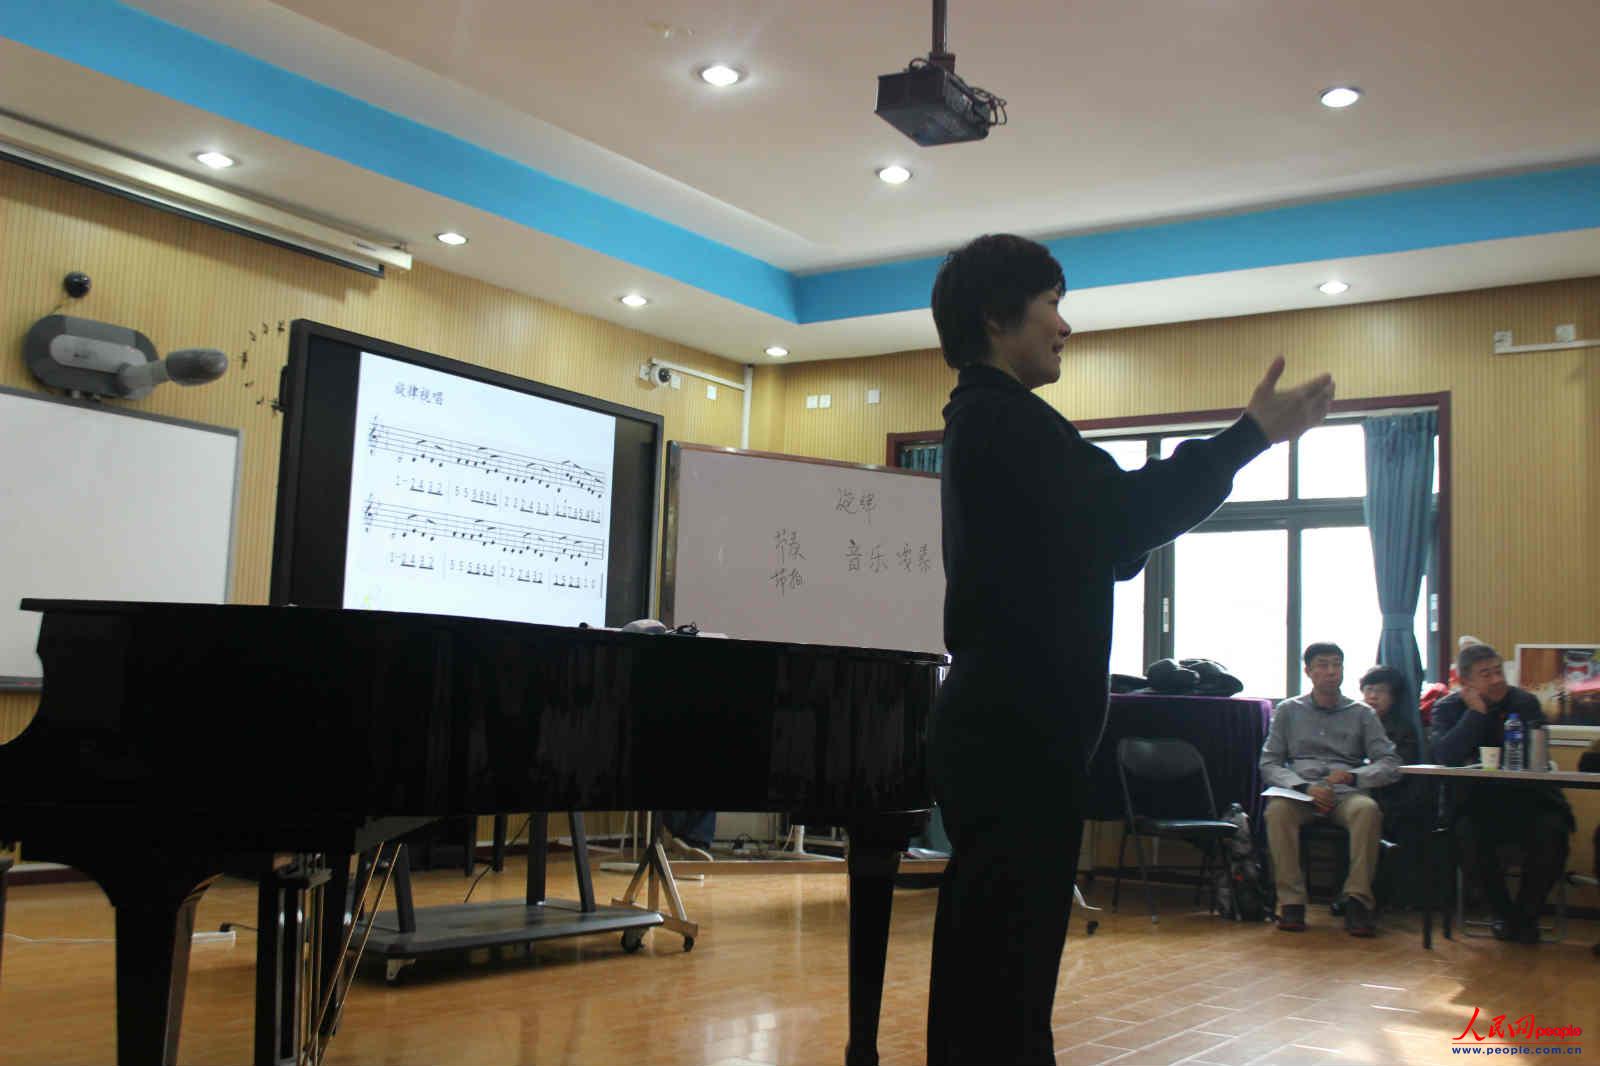 劉娜老師講授音樂課